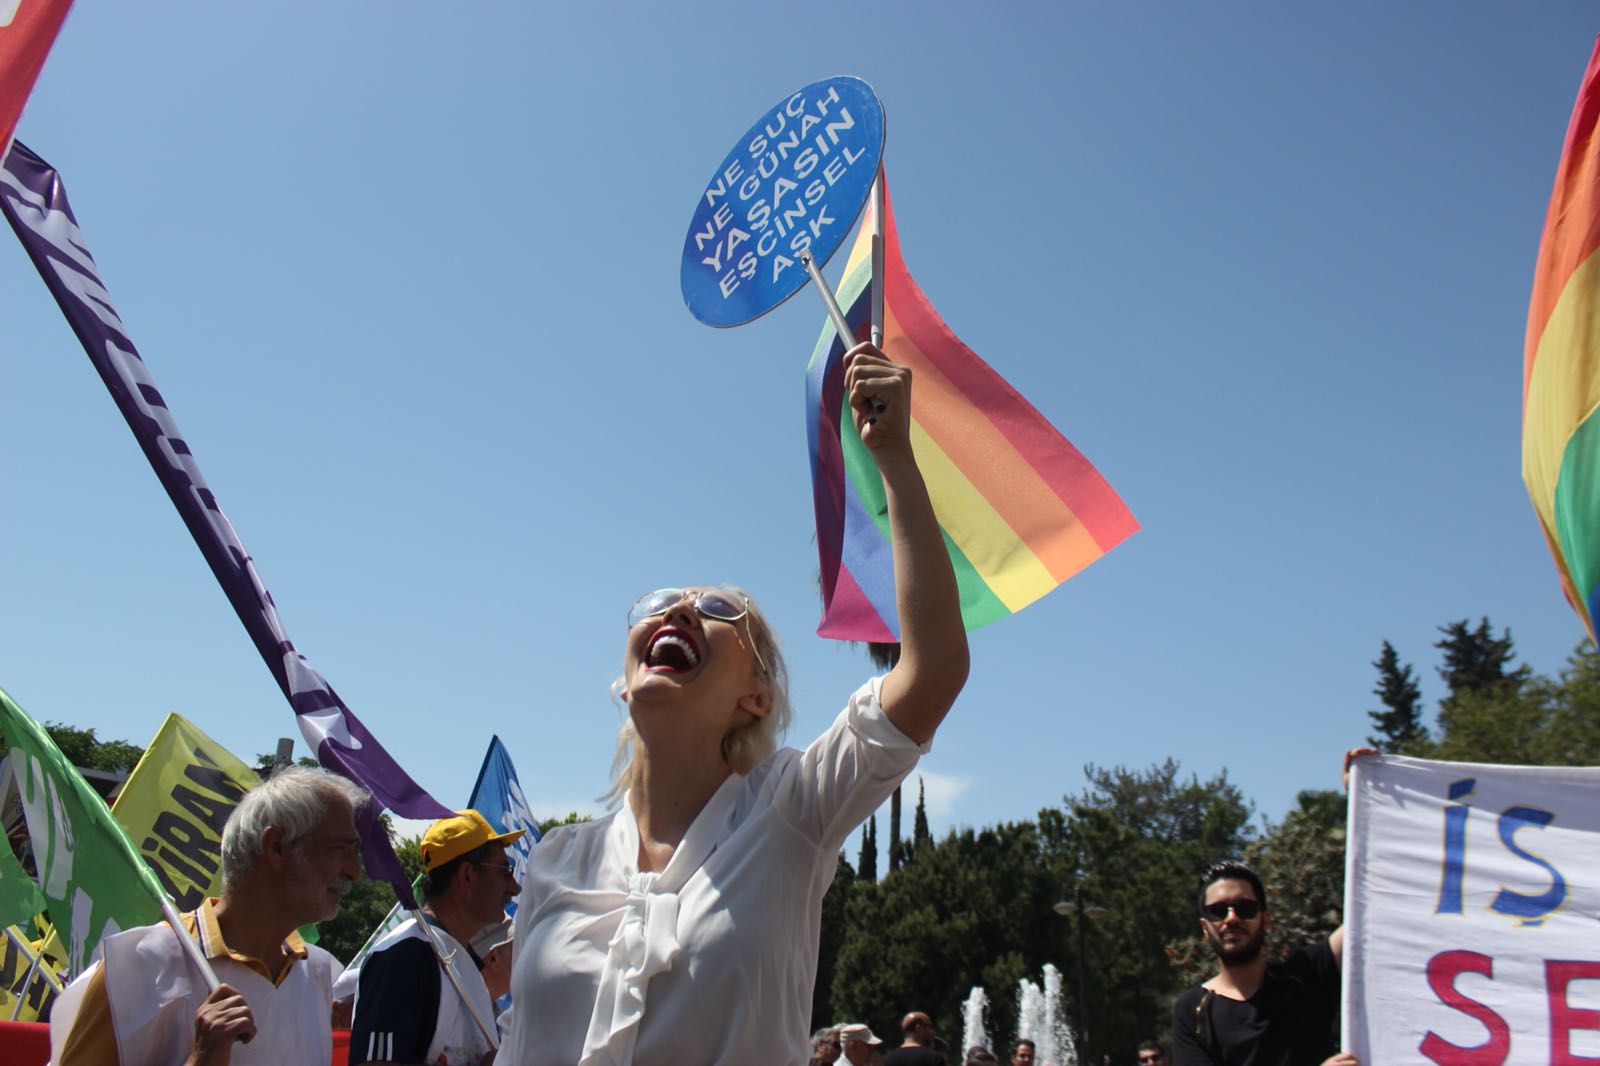 Nefret söyleminin seyri uzun sürer… | Kaos GL - LGBTİ+ Haber Portalı